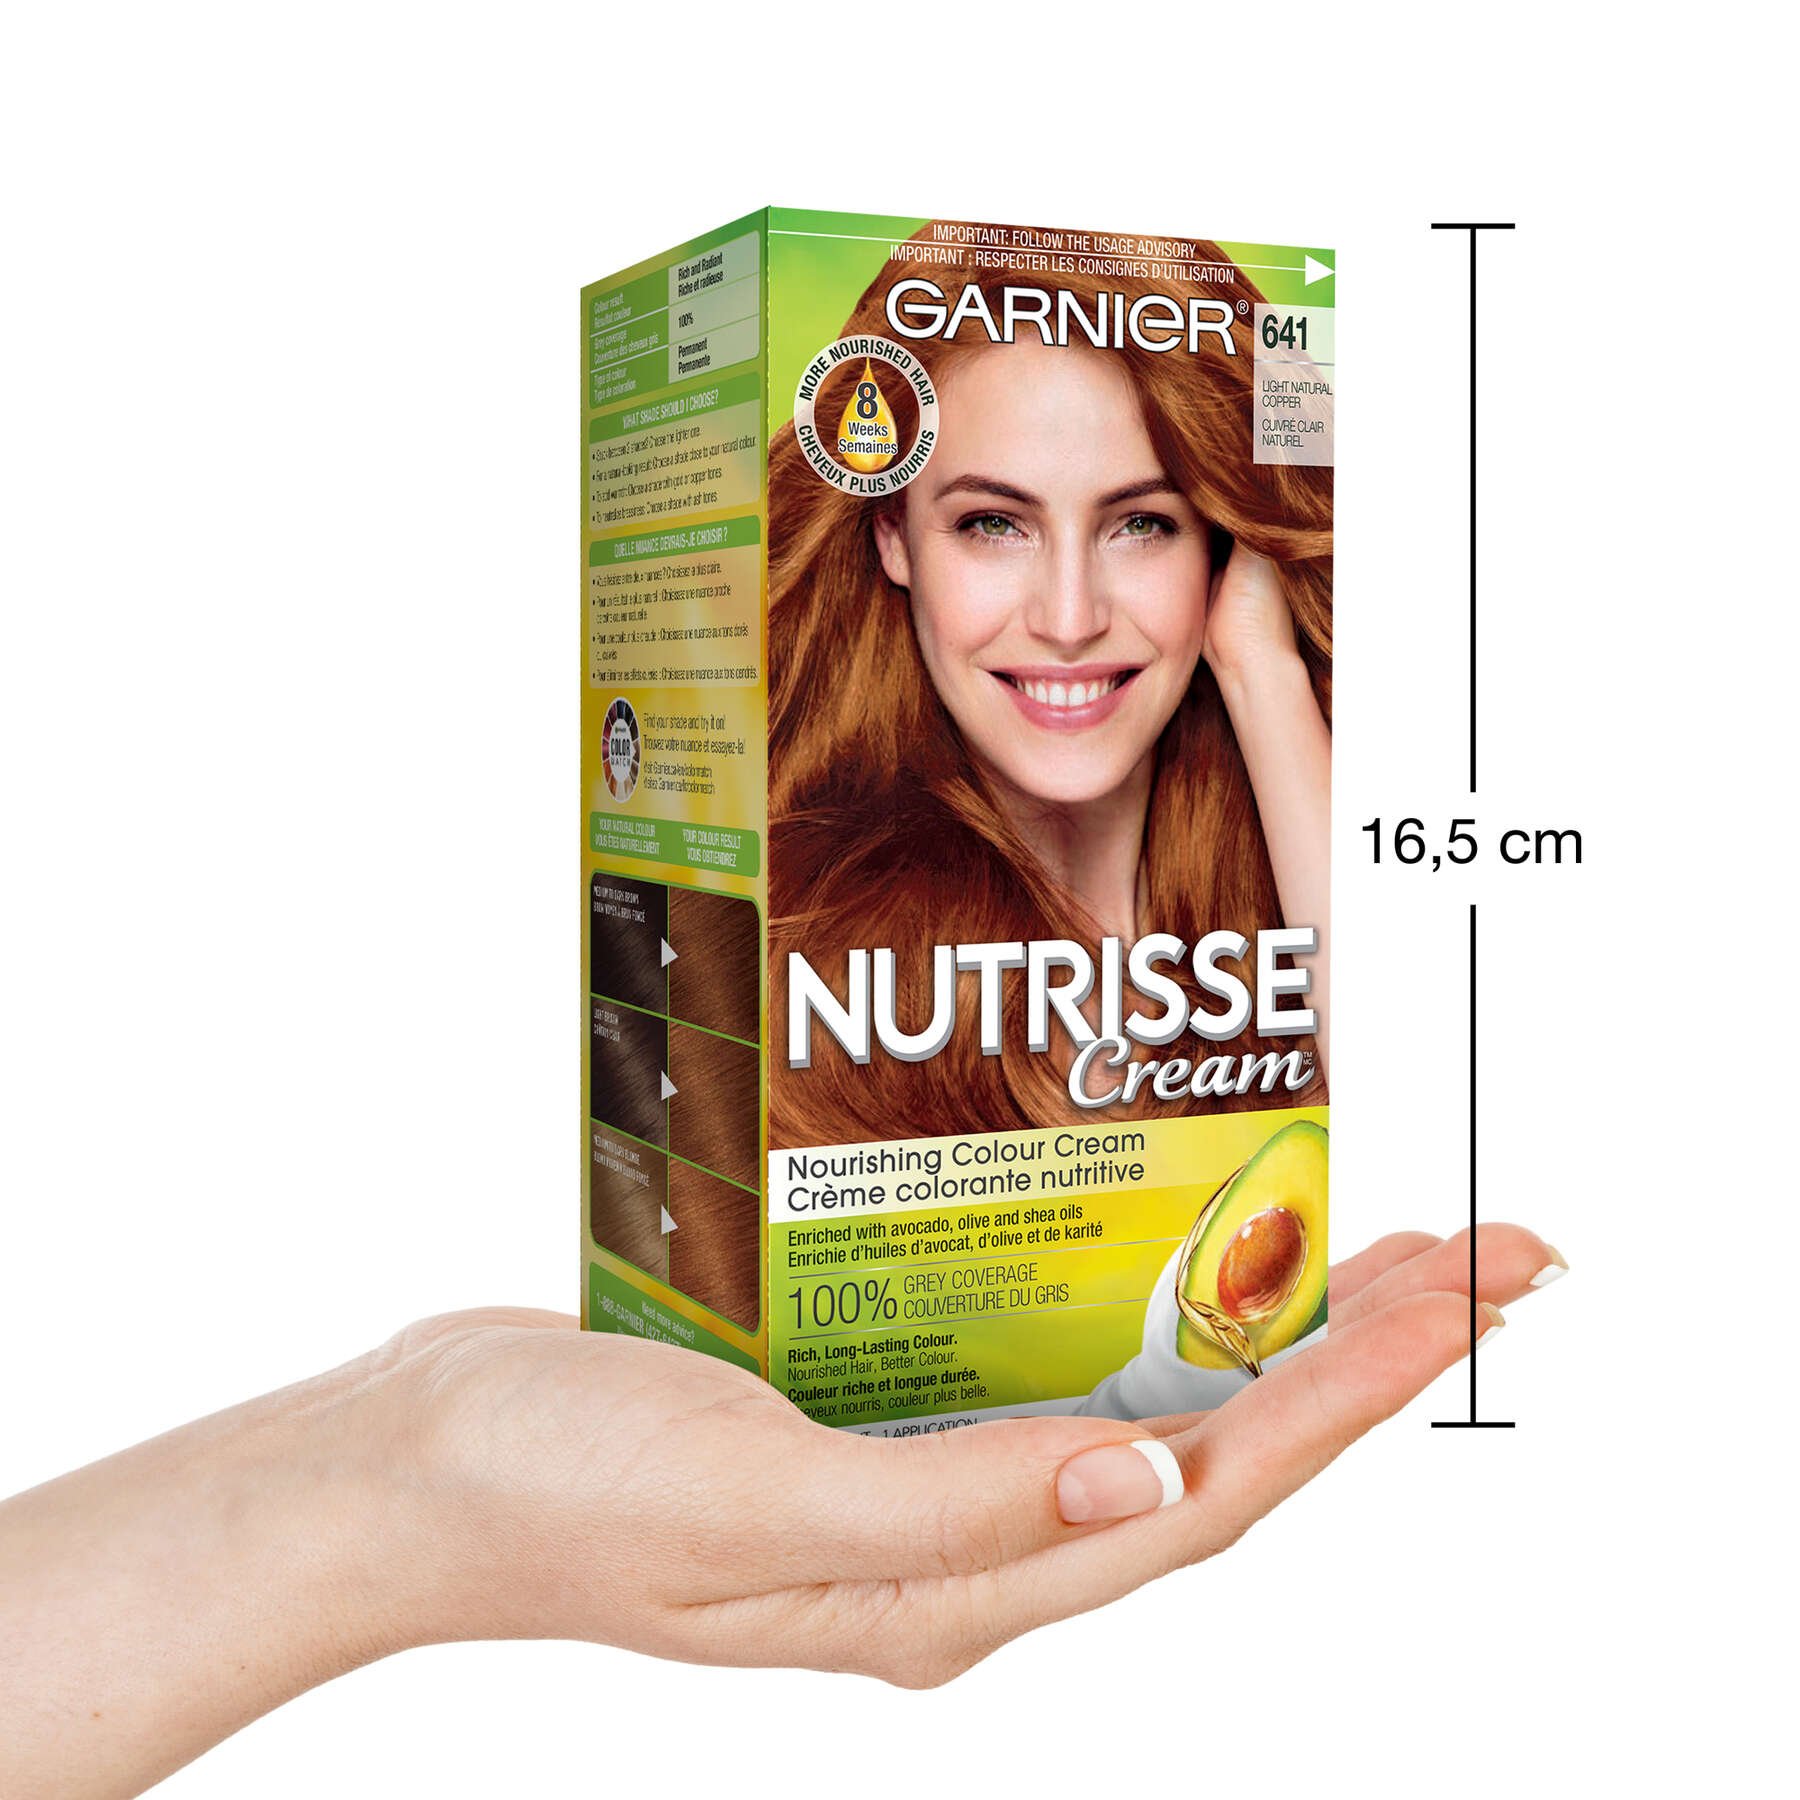 garnier hair dye nutrisse cream 641 light natural copper 0603084400508 inhand